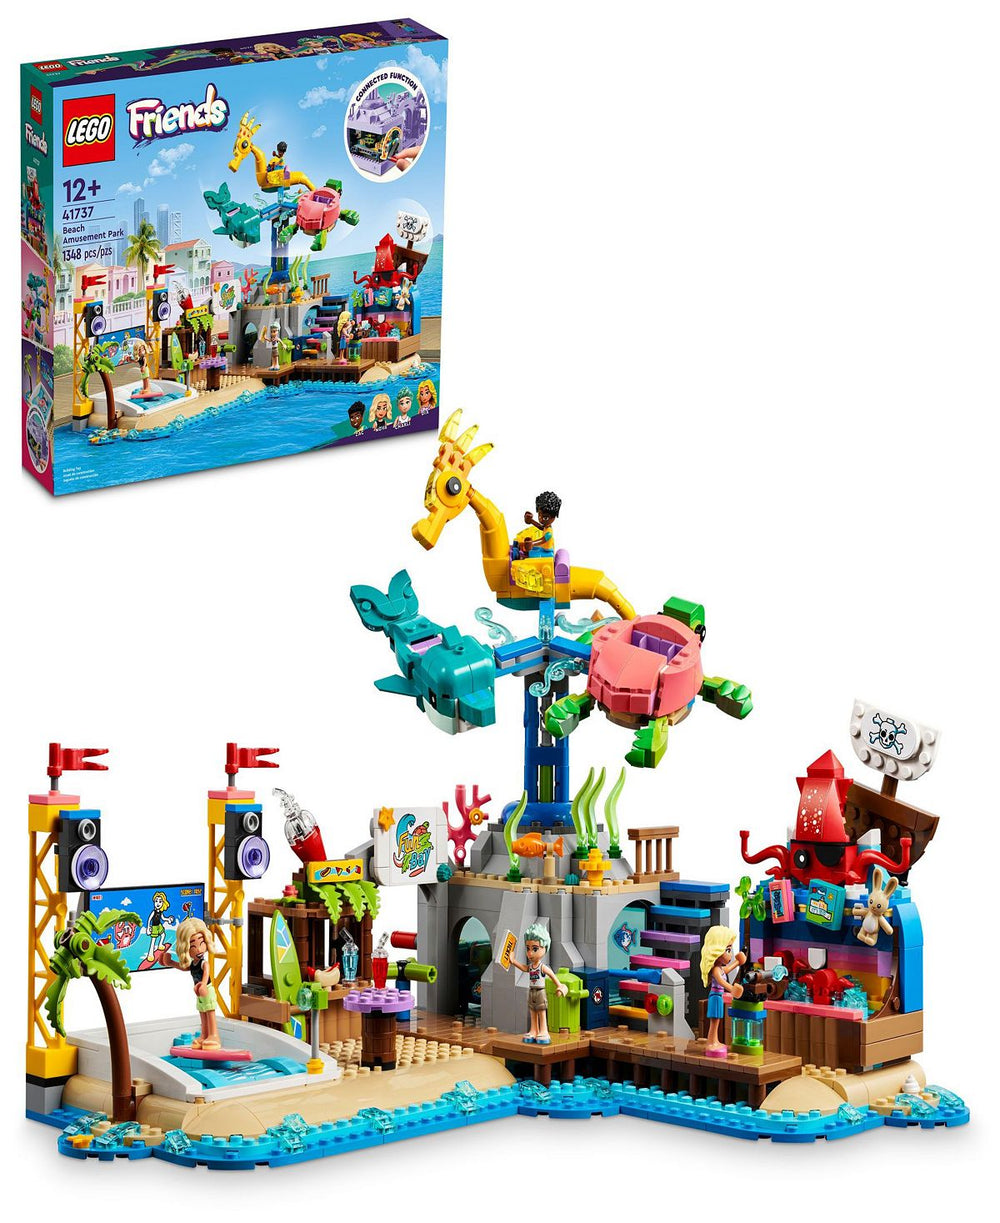 LEGO Friends 41737 Beach Amusement Park Building Set with 1348 Pieces